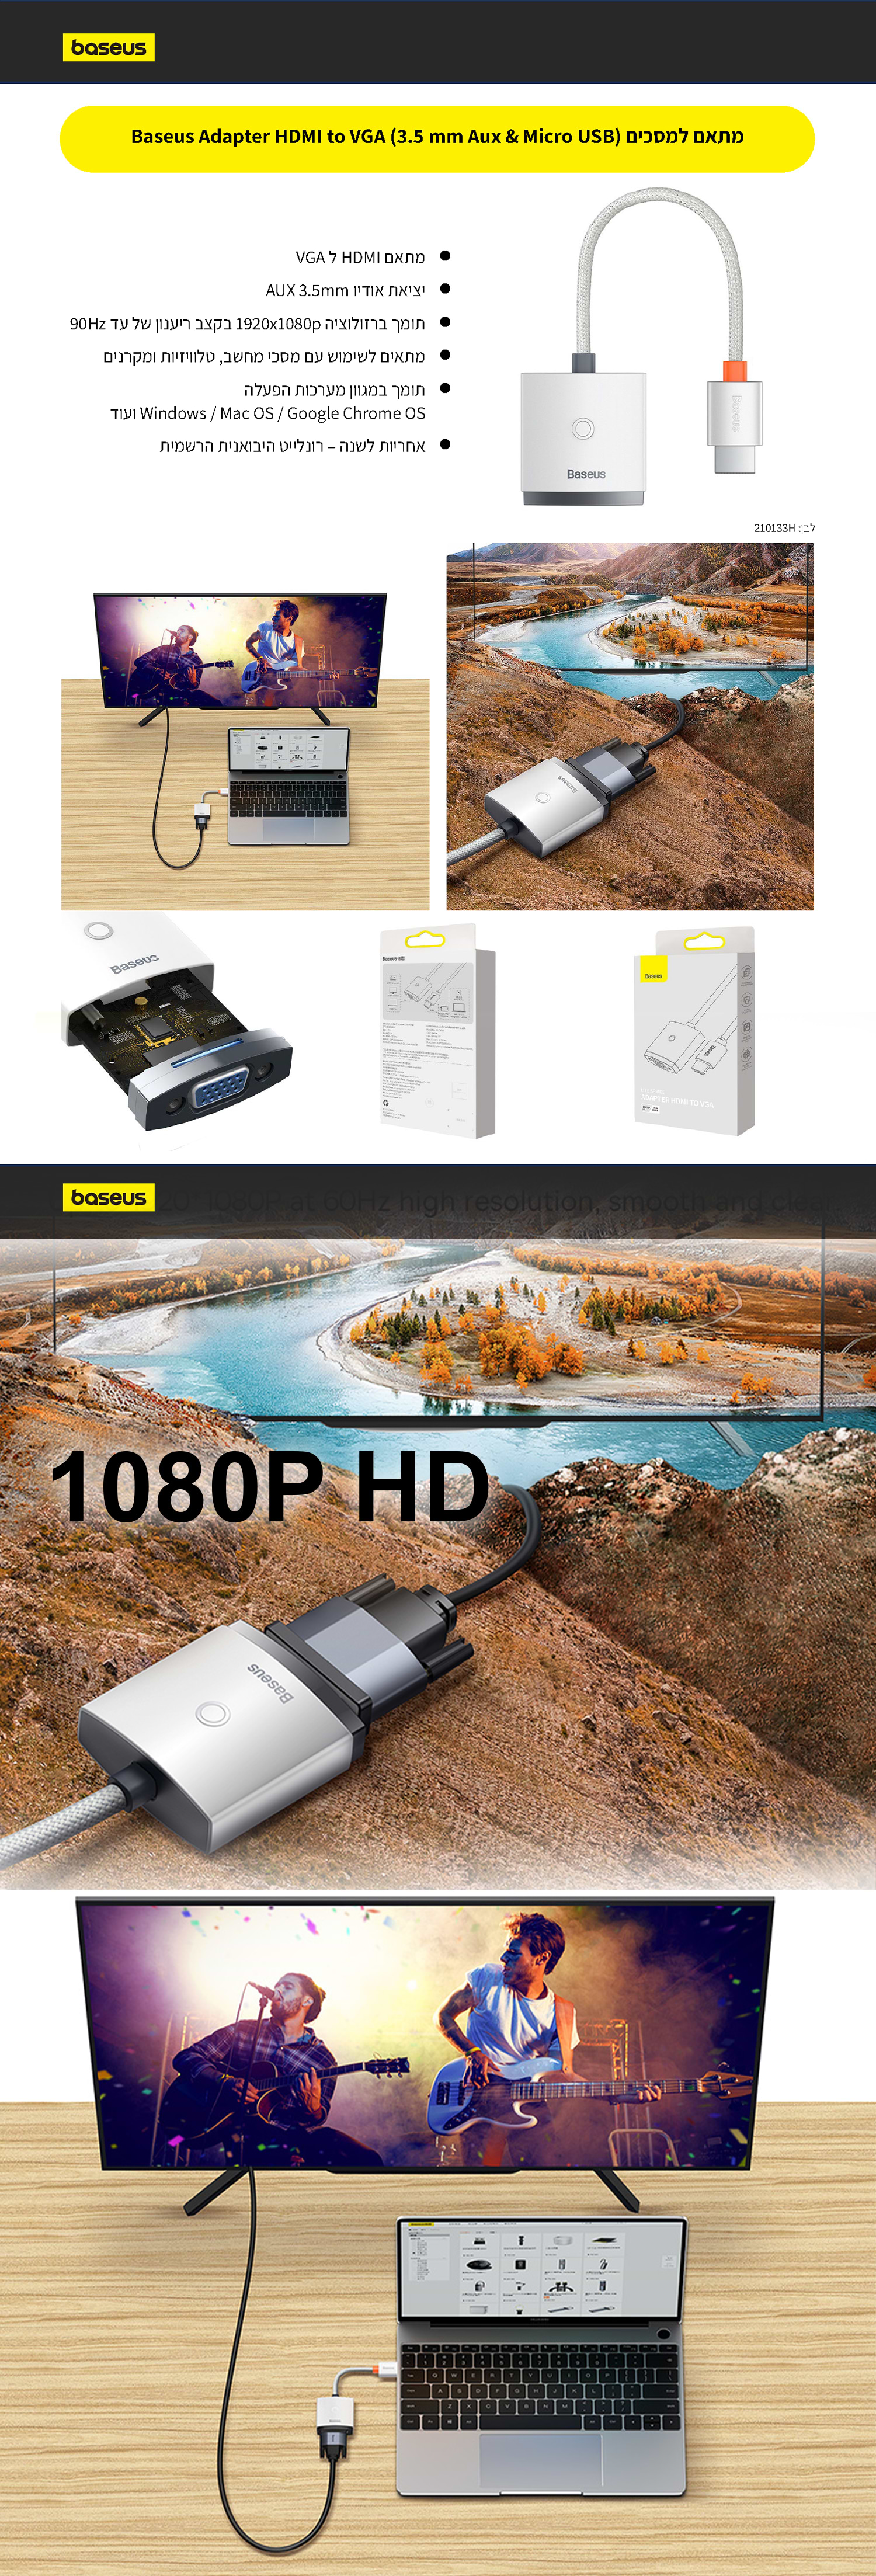 מתאם למסכים Baseus Adapter HDMI to VGA (3.5 mm Aux & Micro USB) - צבע לבן שנה אחריות ע"י היבואן הרשמי